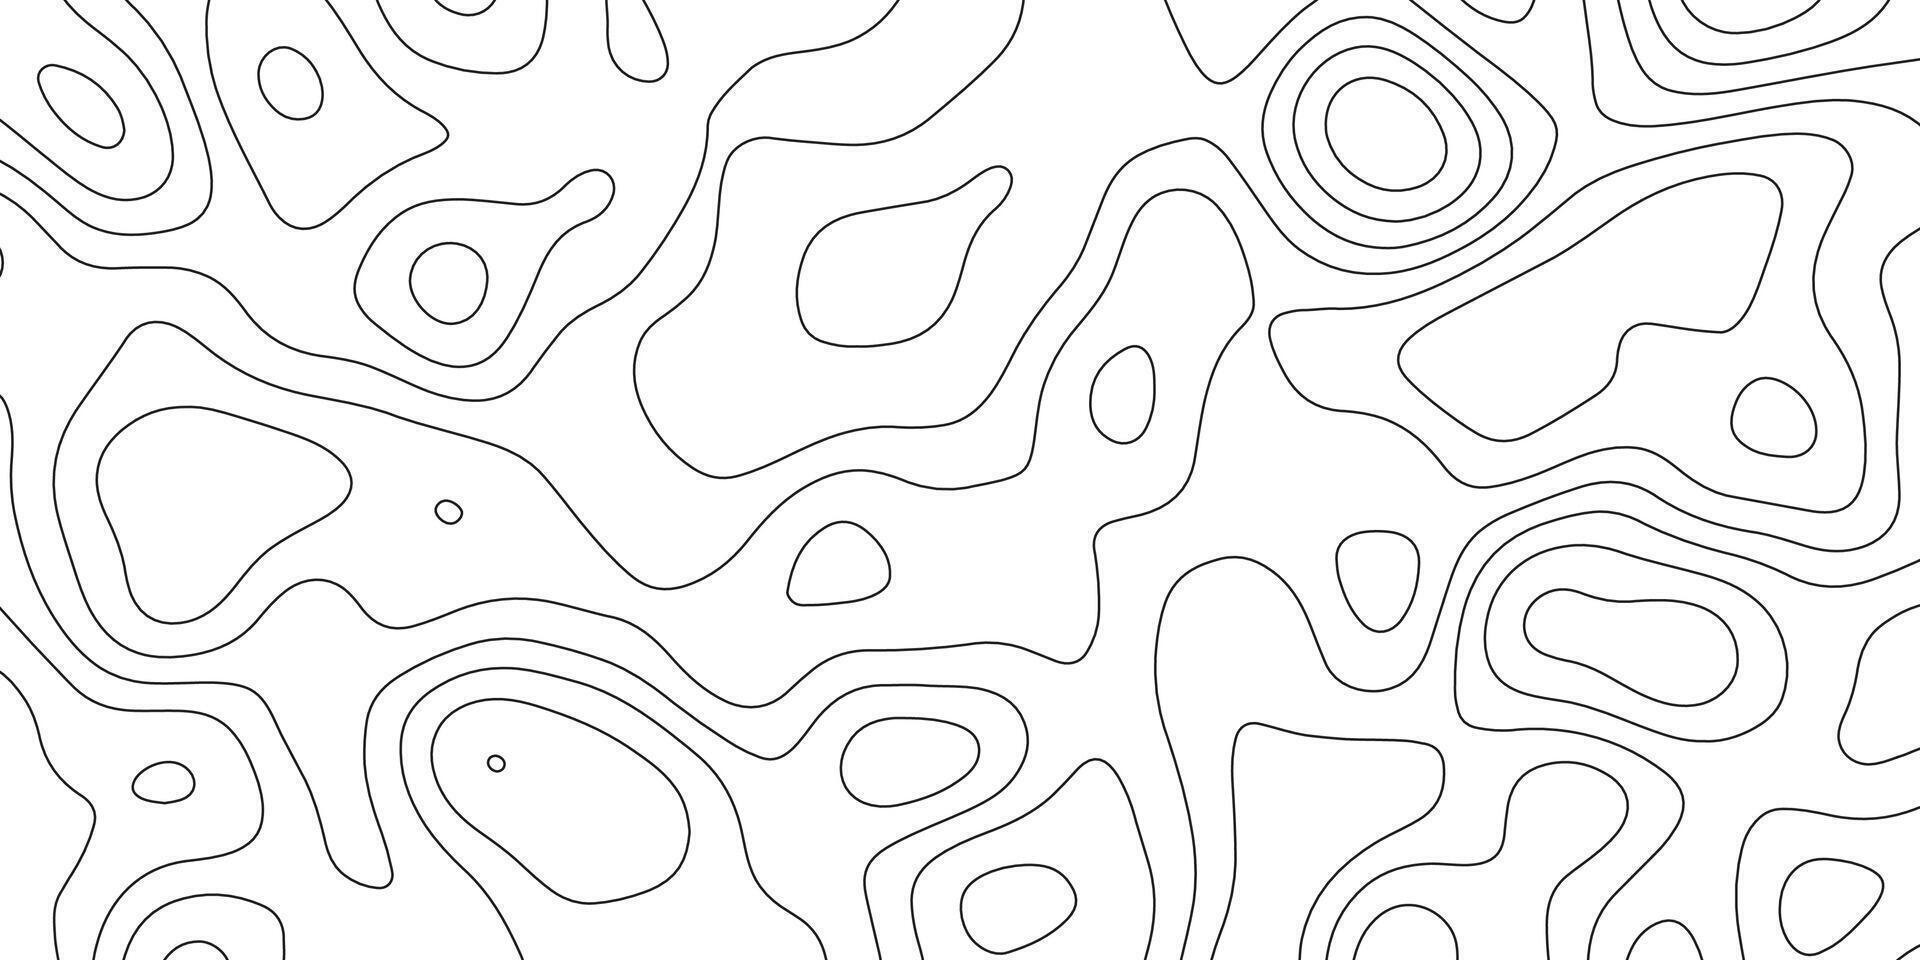 achtergrond van de topografisch kaart. verhoging contouren schets cartografie textuur. geografisch abstract rooster. futuristische wireframe landschap achtergrond. zwart en wit naadloos patroon vector